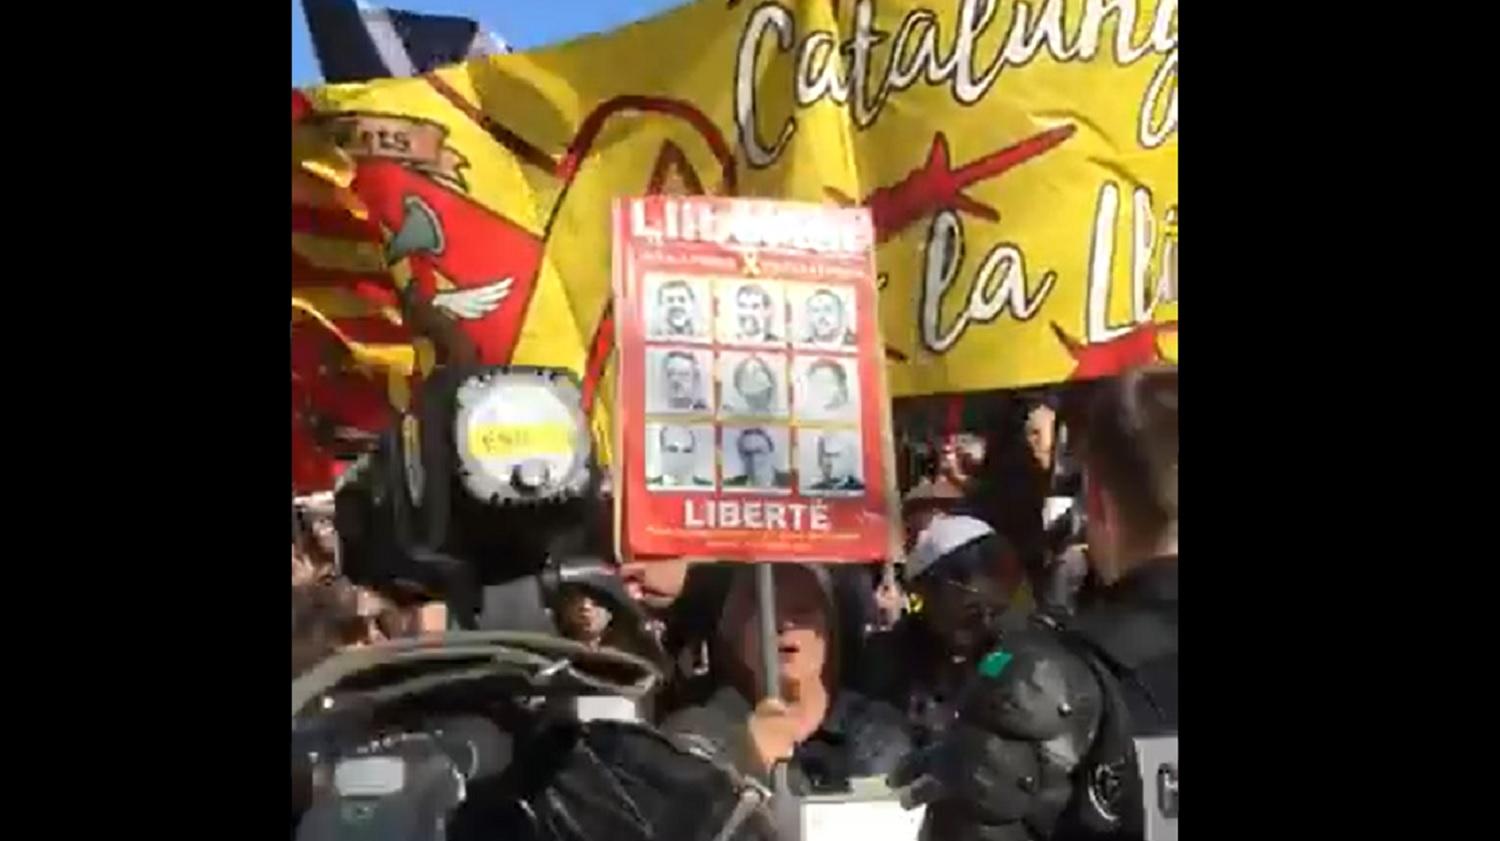 El día que independentistas catalanes increparon a exiliados republicanos al grito de "fascistas"